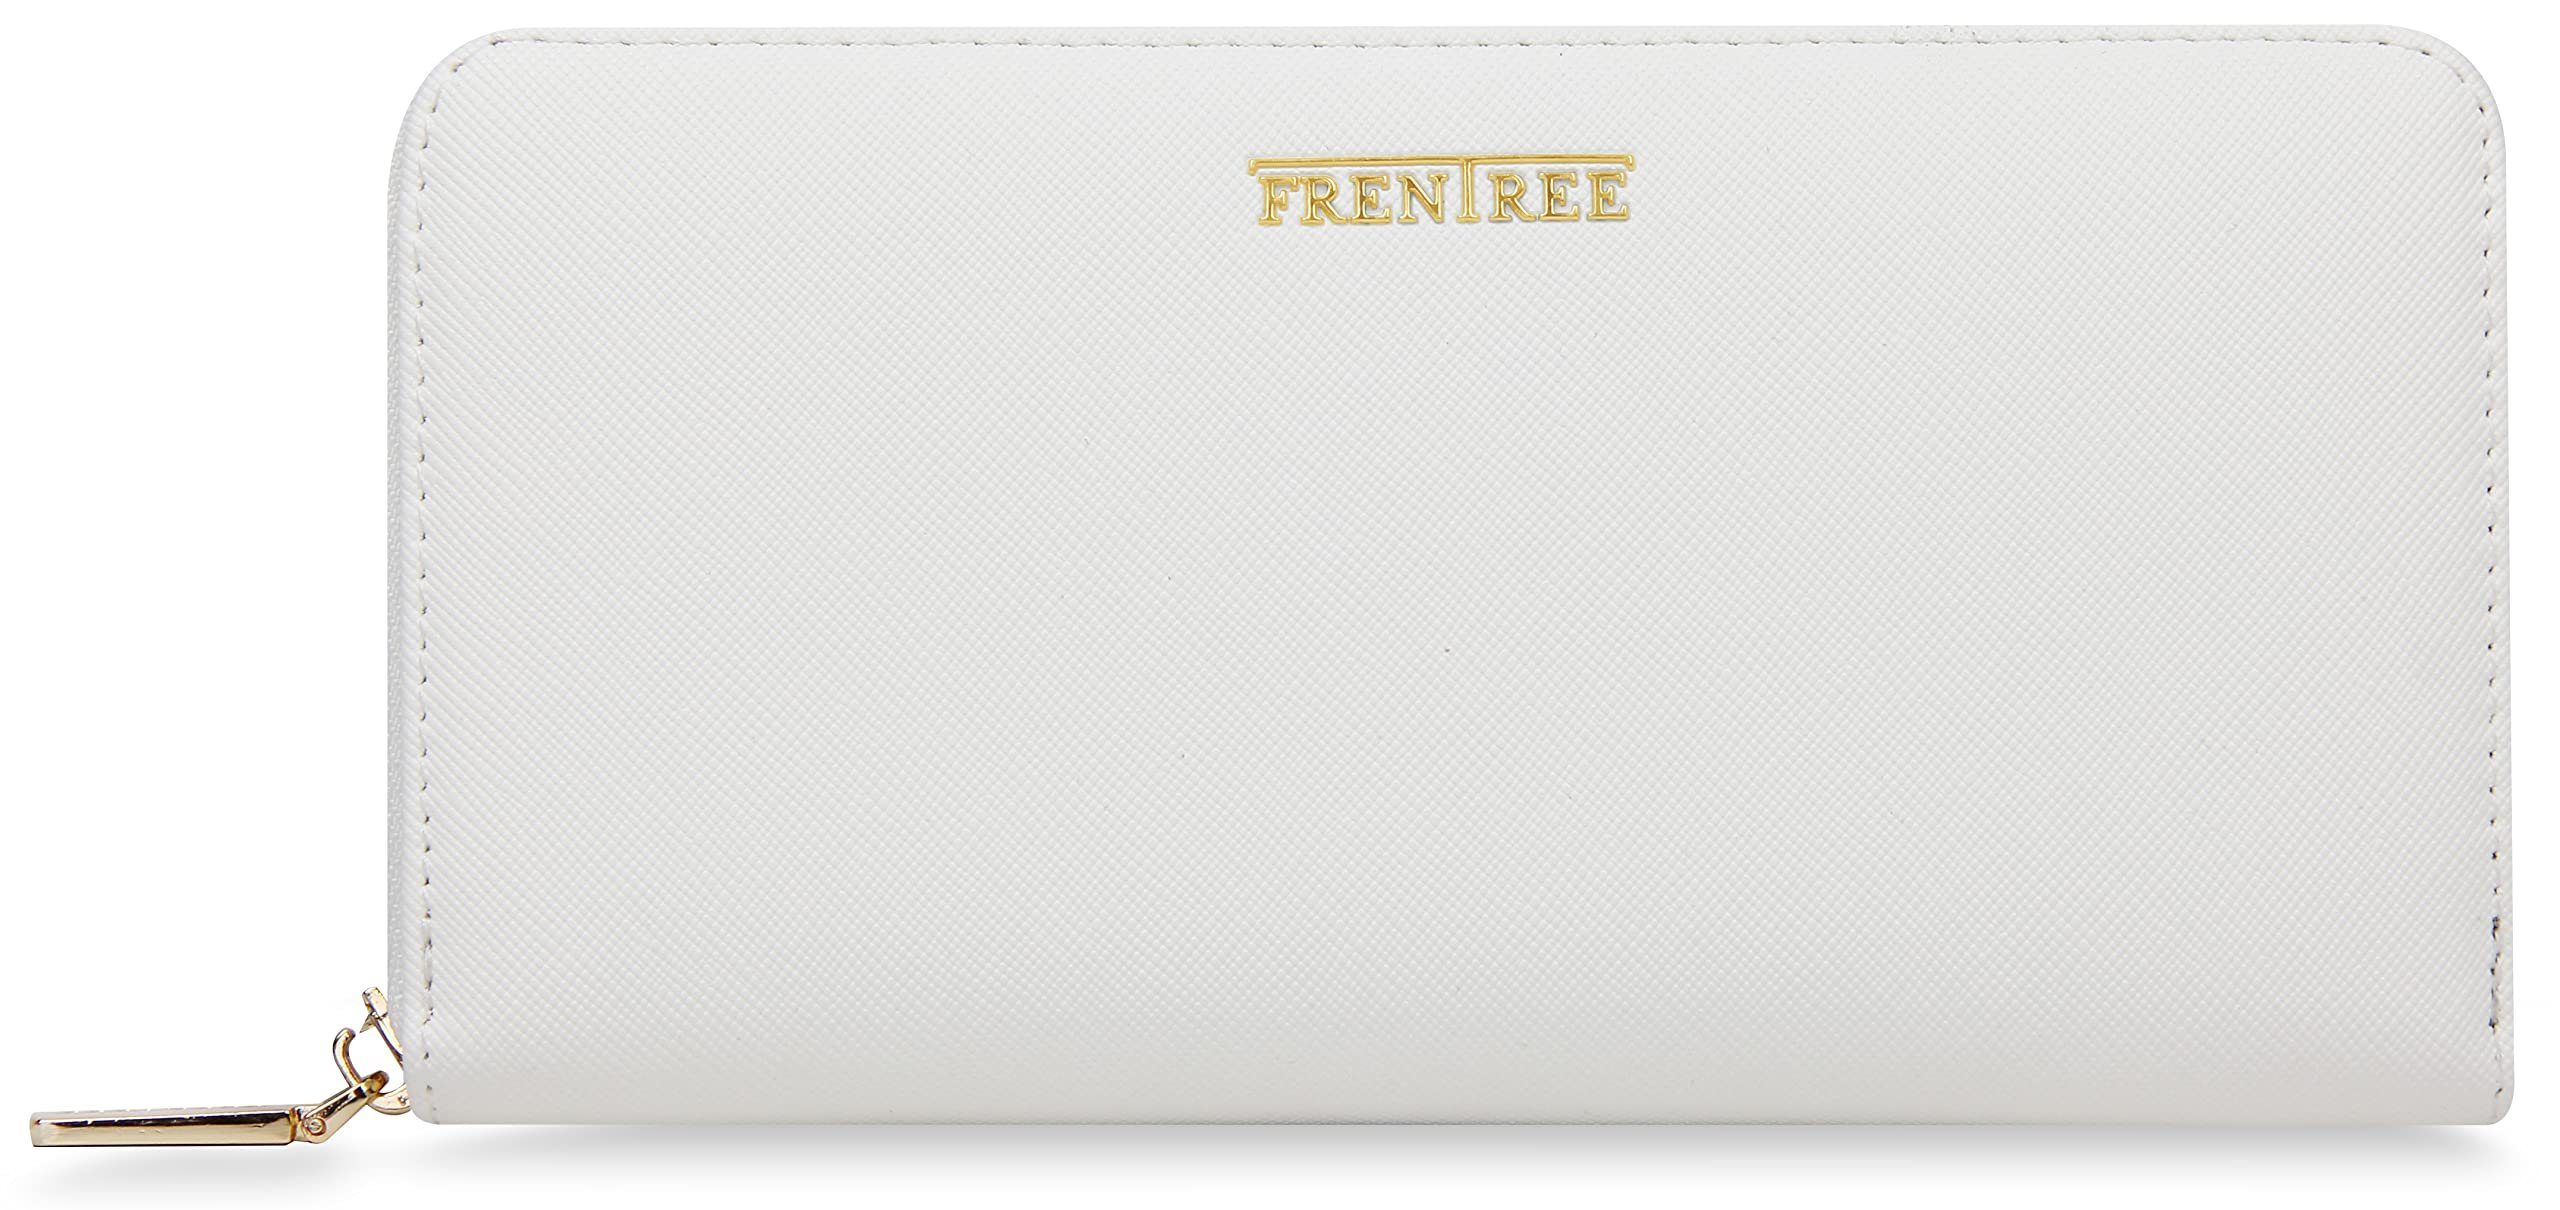 Frentree Geldbörse, Damen Portemonnaie mit RFID Schutz, Smartphonefach, inkl. Geschenkbox Weiß